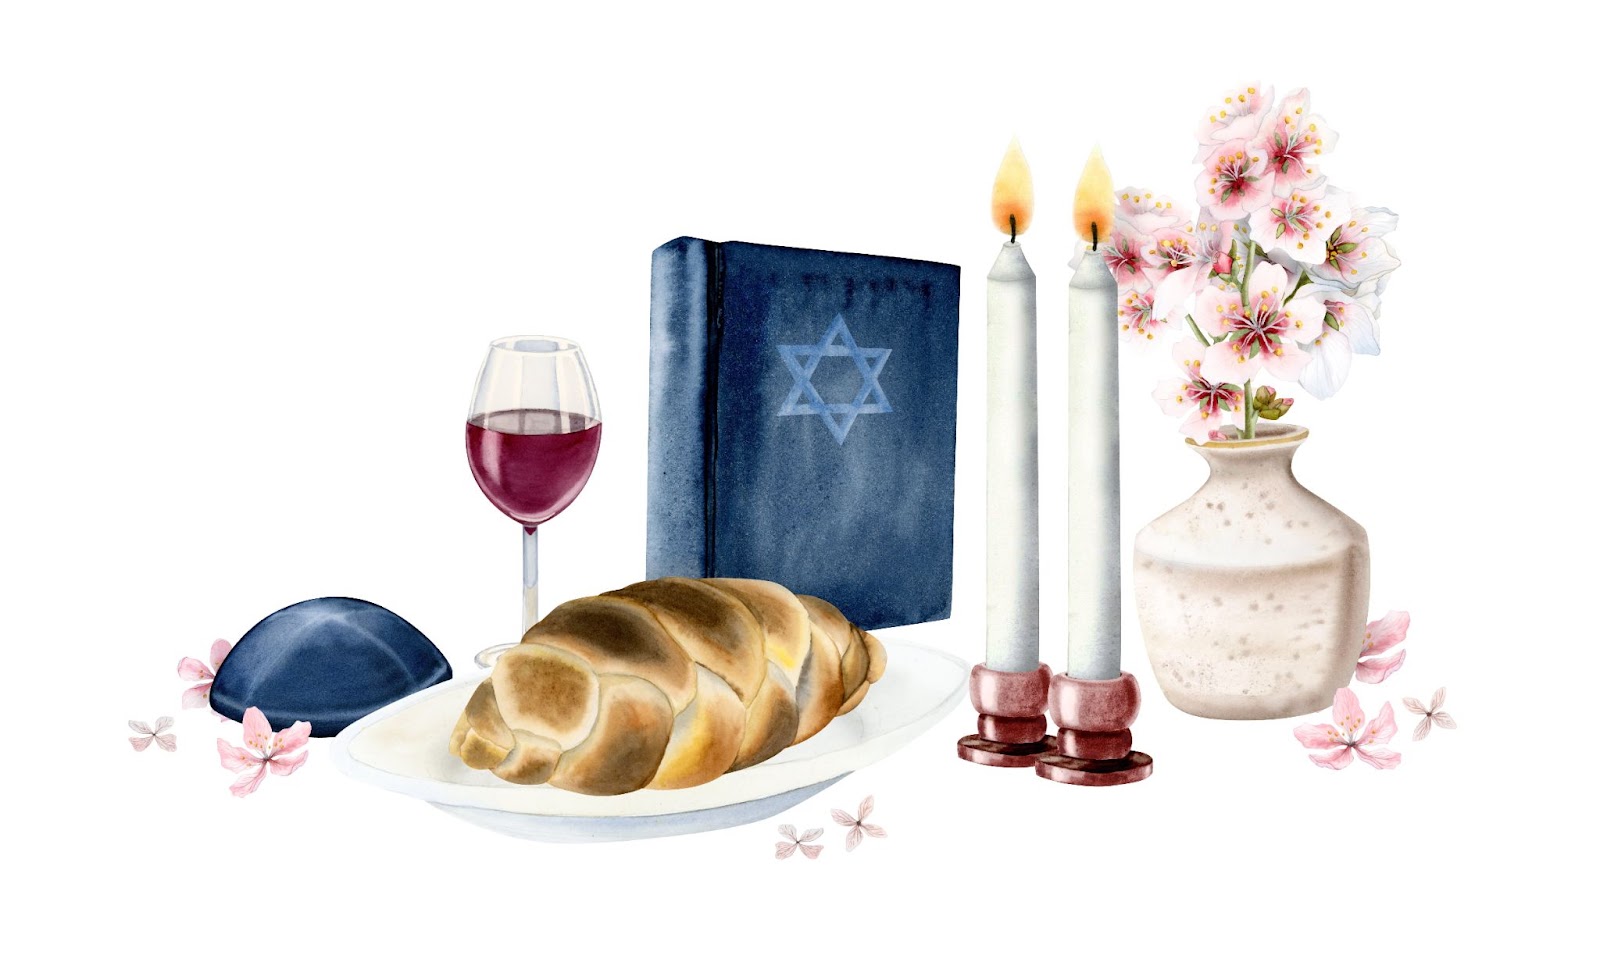 מה משמעות השבת עבור העם היהודי, איך מעשה הדלקת נרות השבת הפך לסמל מתמשך של רוחניות, שלום ואחדות.